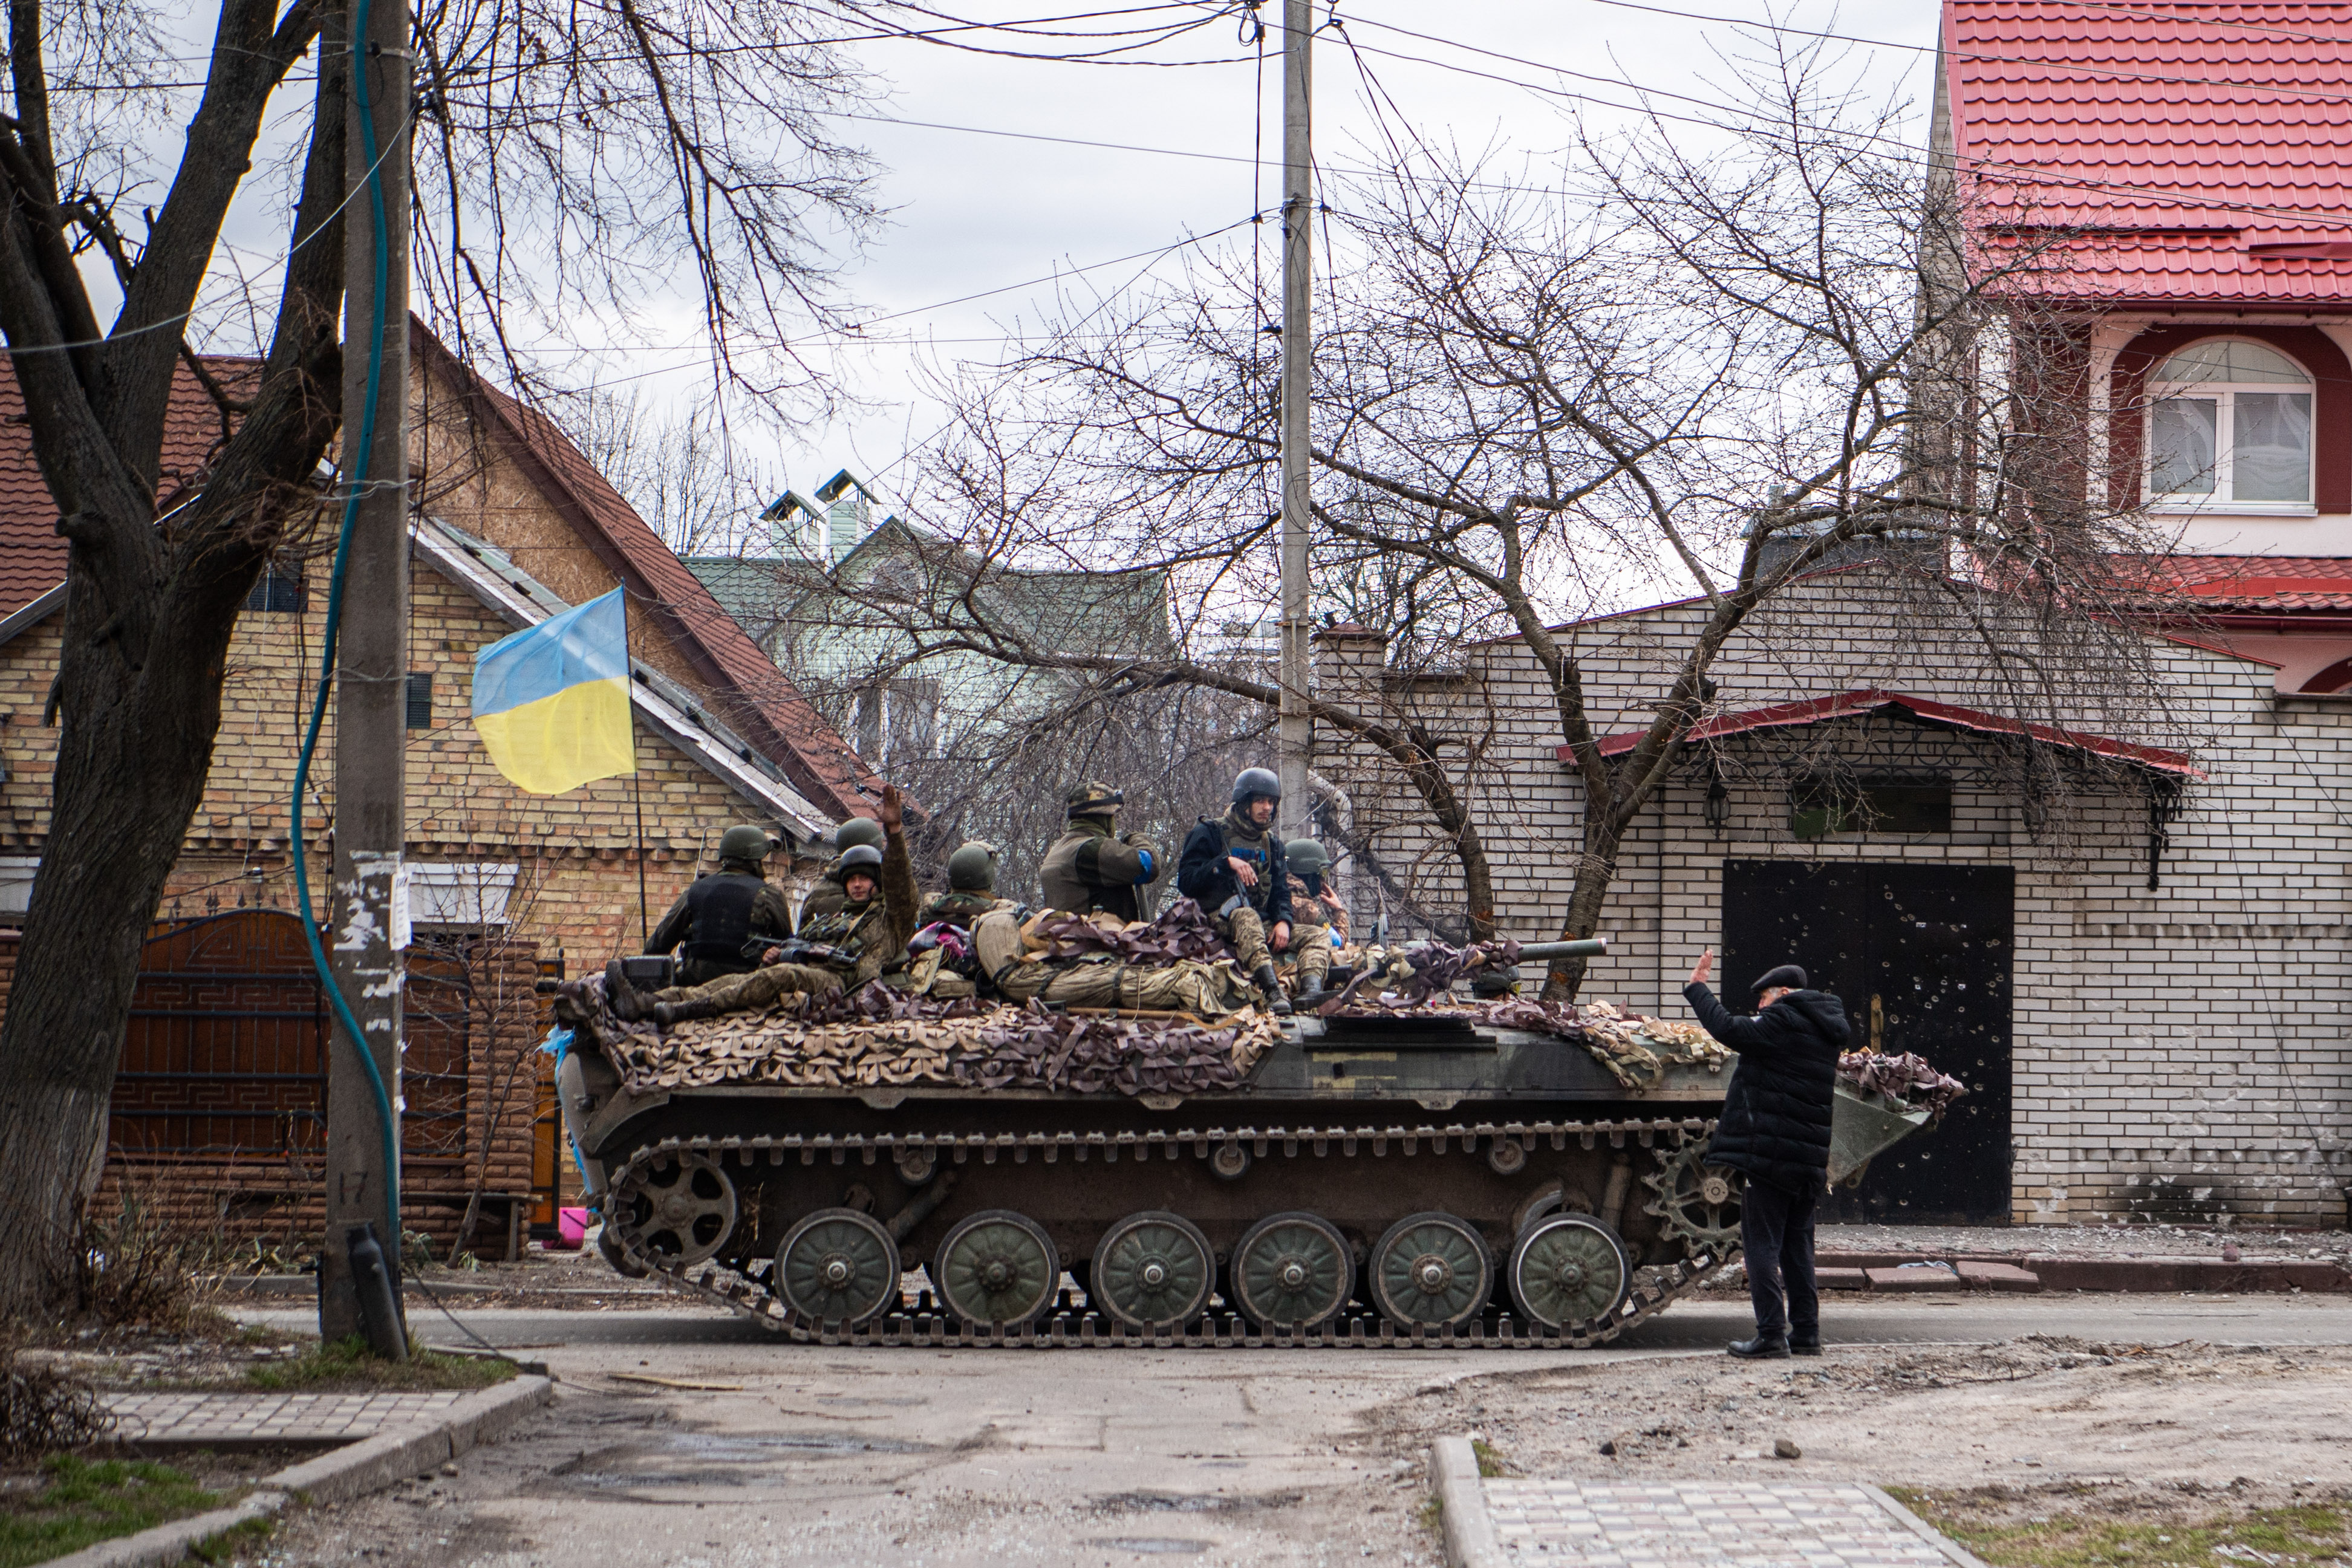 A Ukrainian tank in Irpin